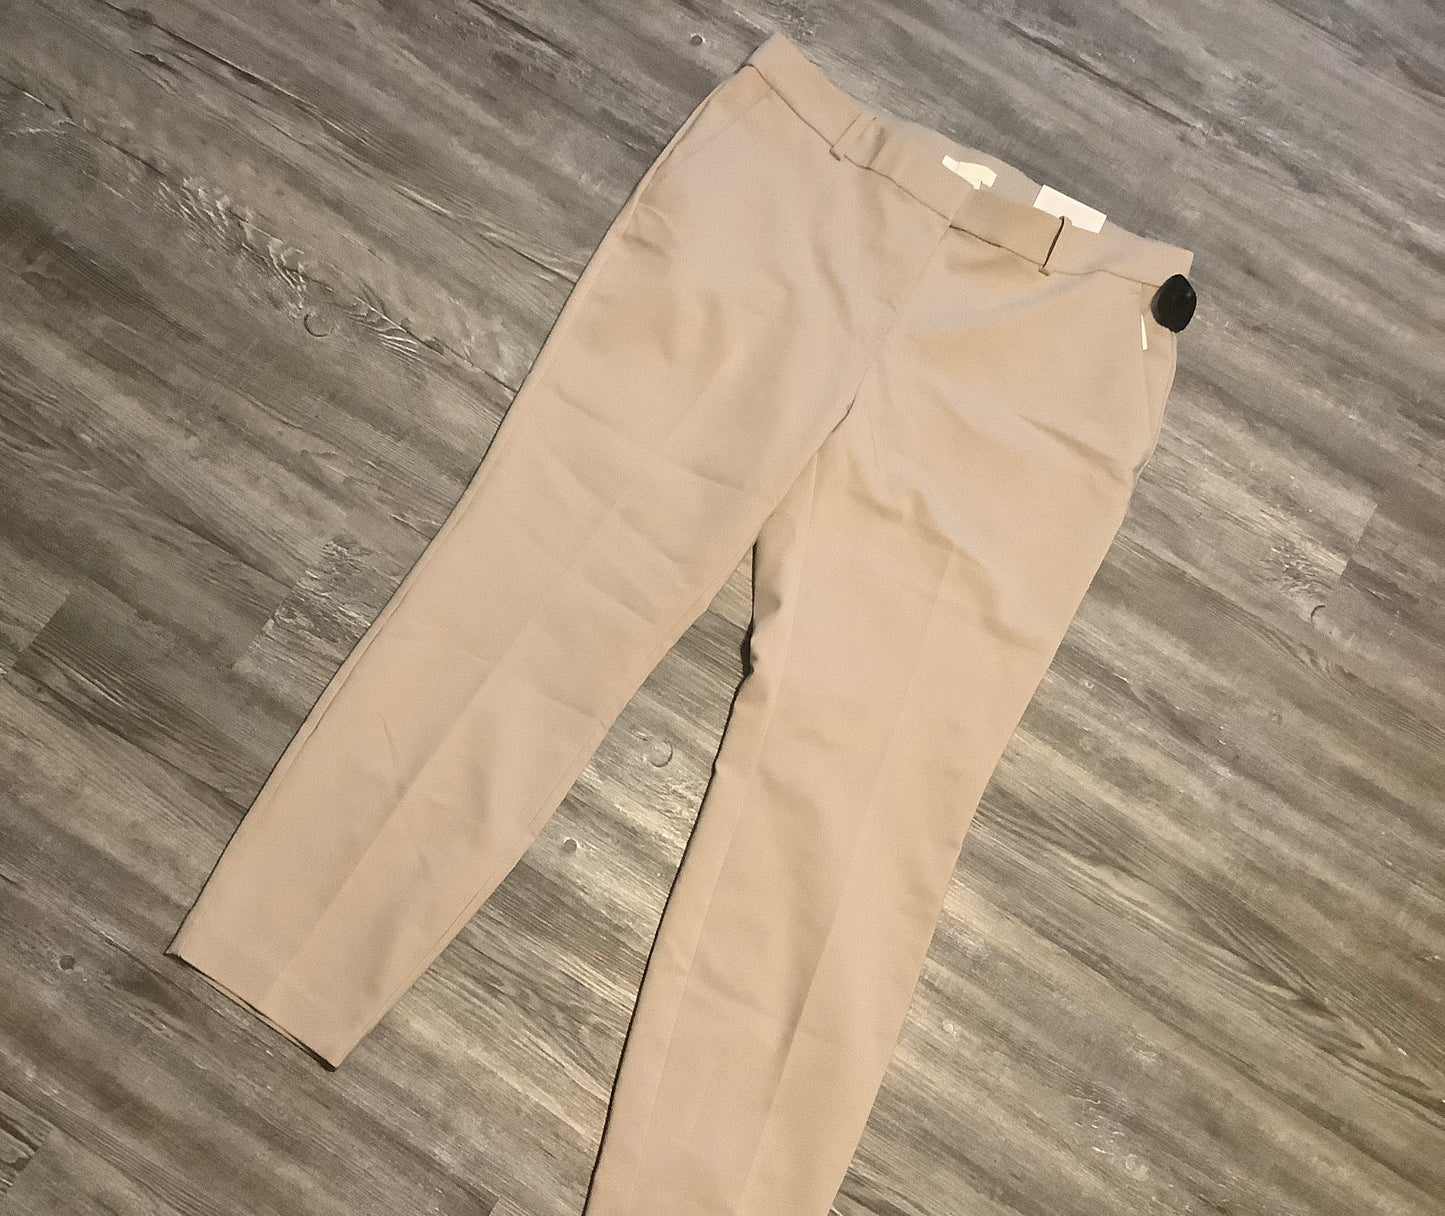 Tan Pants Dress H&m, Size 16